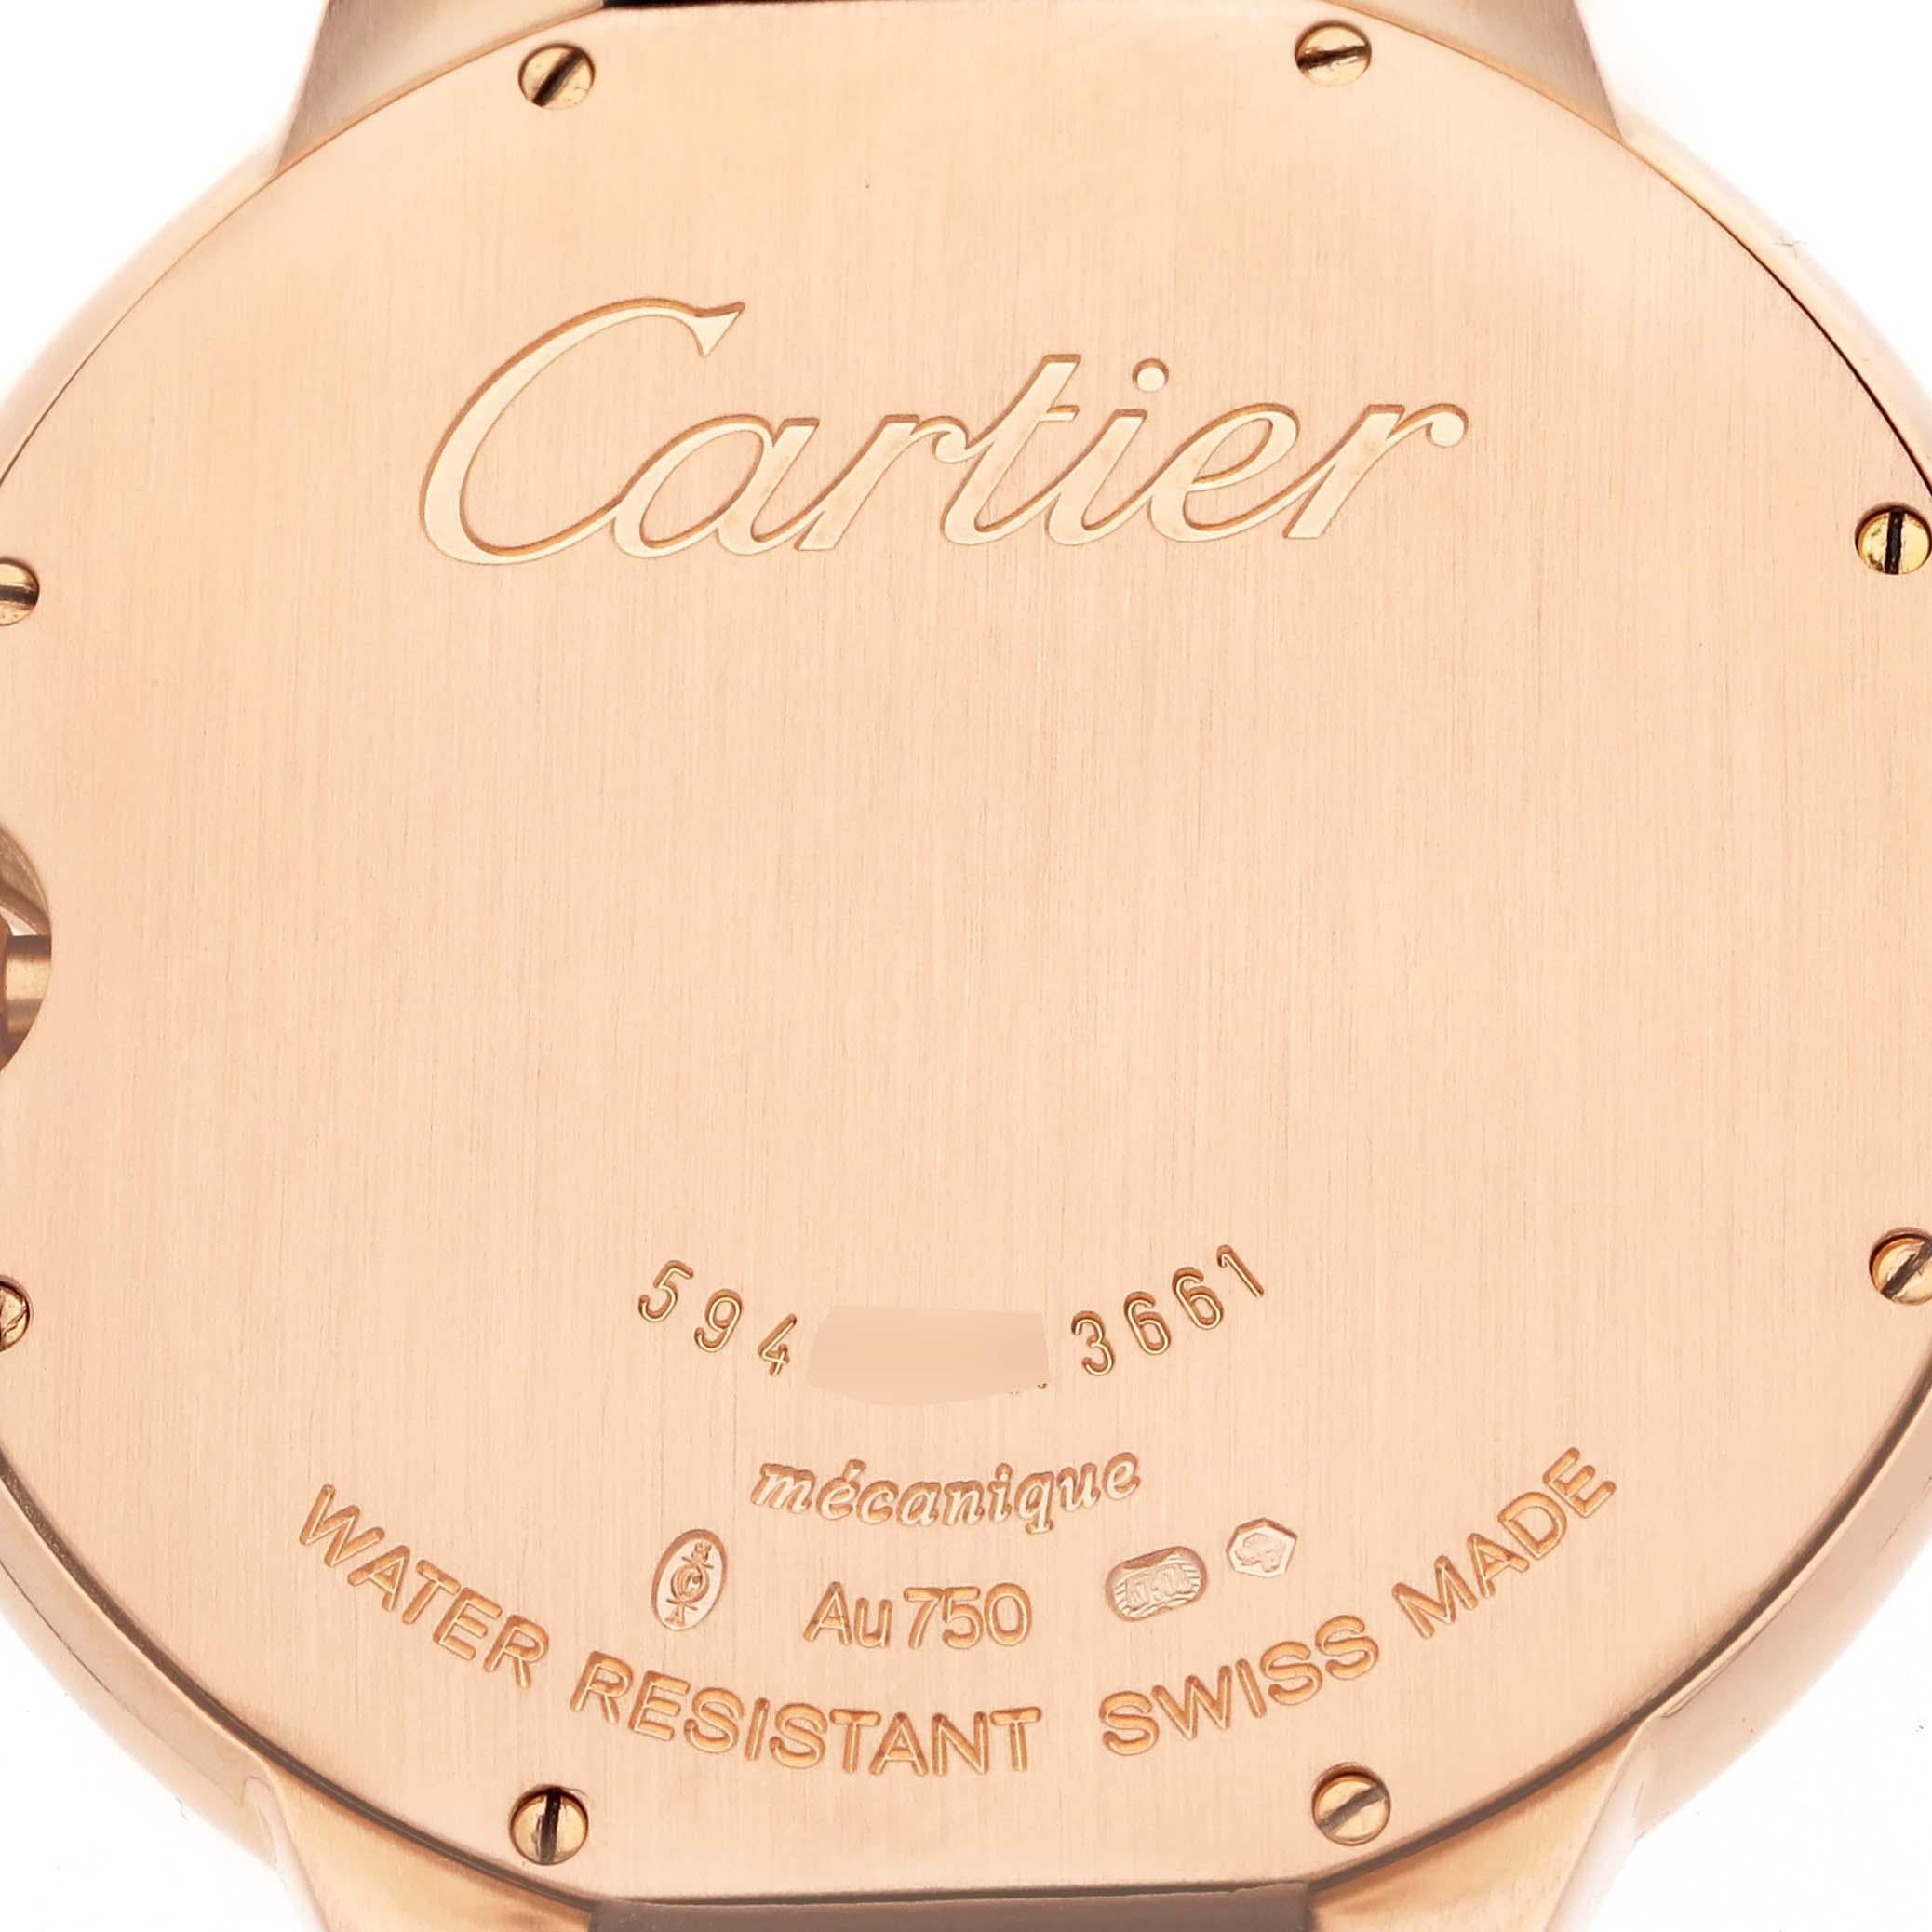 Cartier Ballon Bleu Rose Gold Mens Watch W6920083. Mouvement à remontage manuel. Boîtier en or rose 18 carats de 40,0 mm de diamètre. Couronne cannelée sertie d'un cabochon de saphir bleu. Lunette lisse en or rose 18K. Verre saphir résistant aux